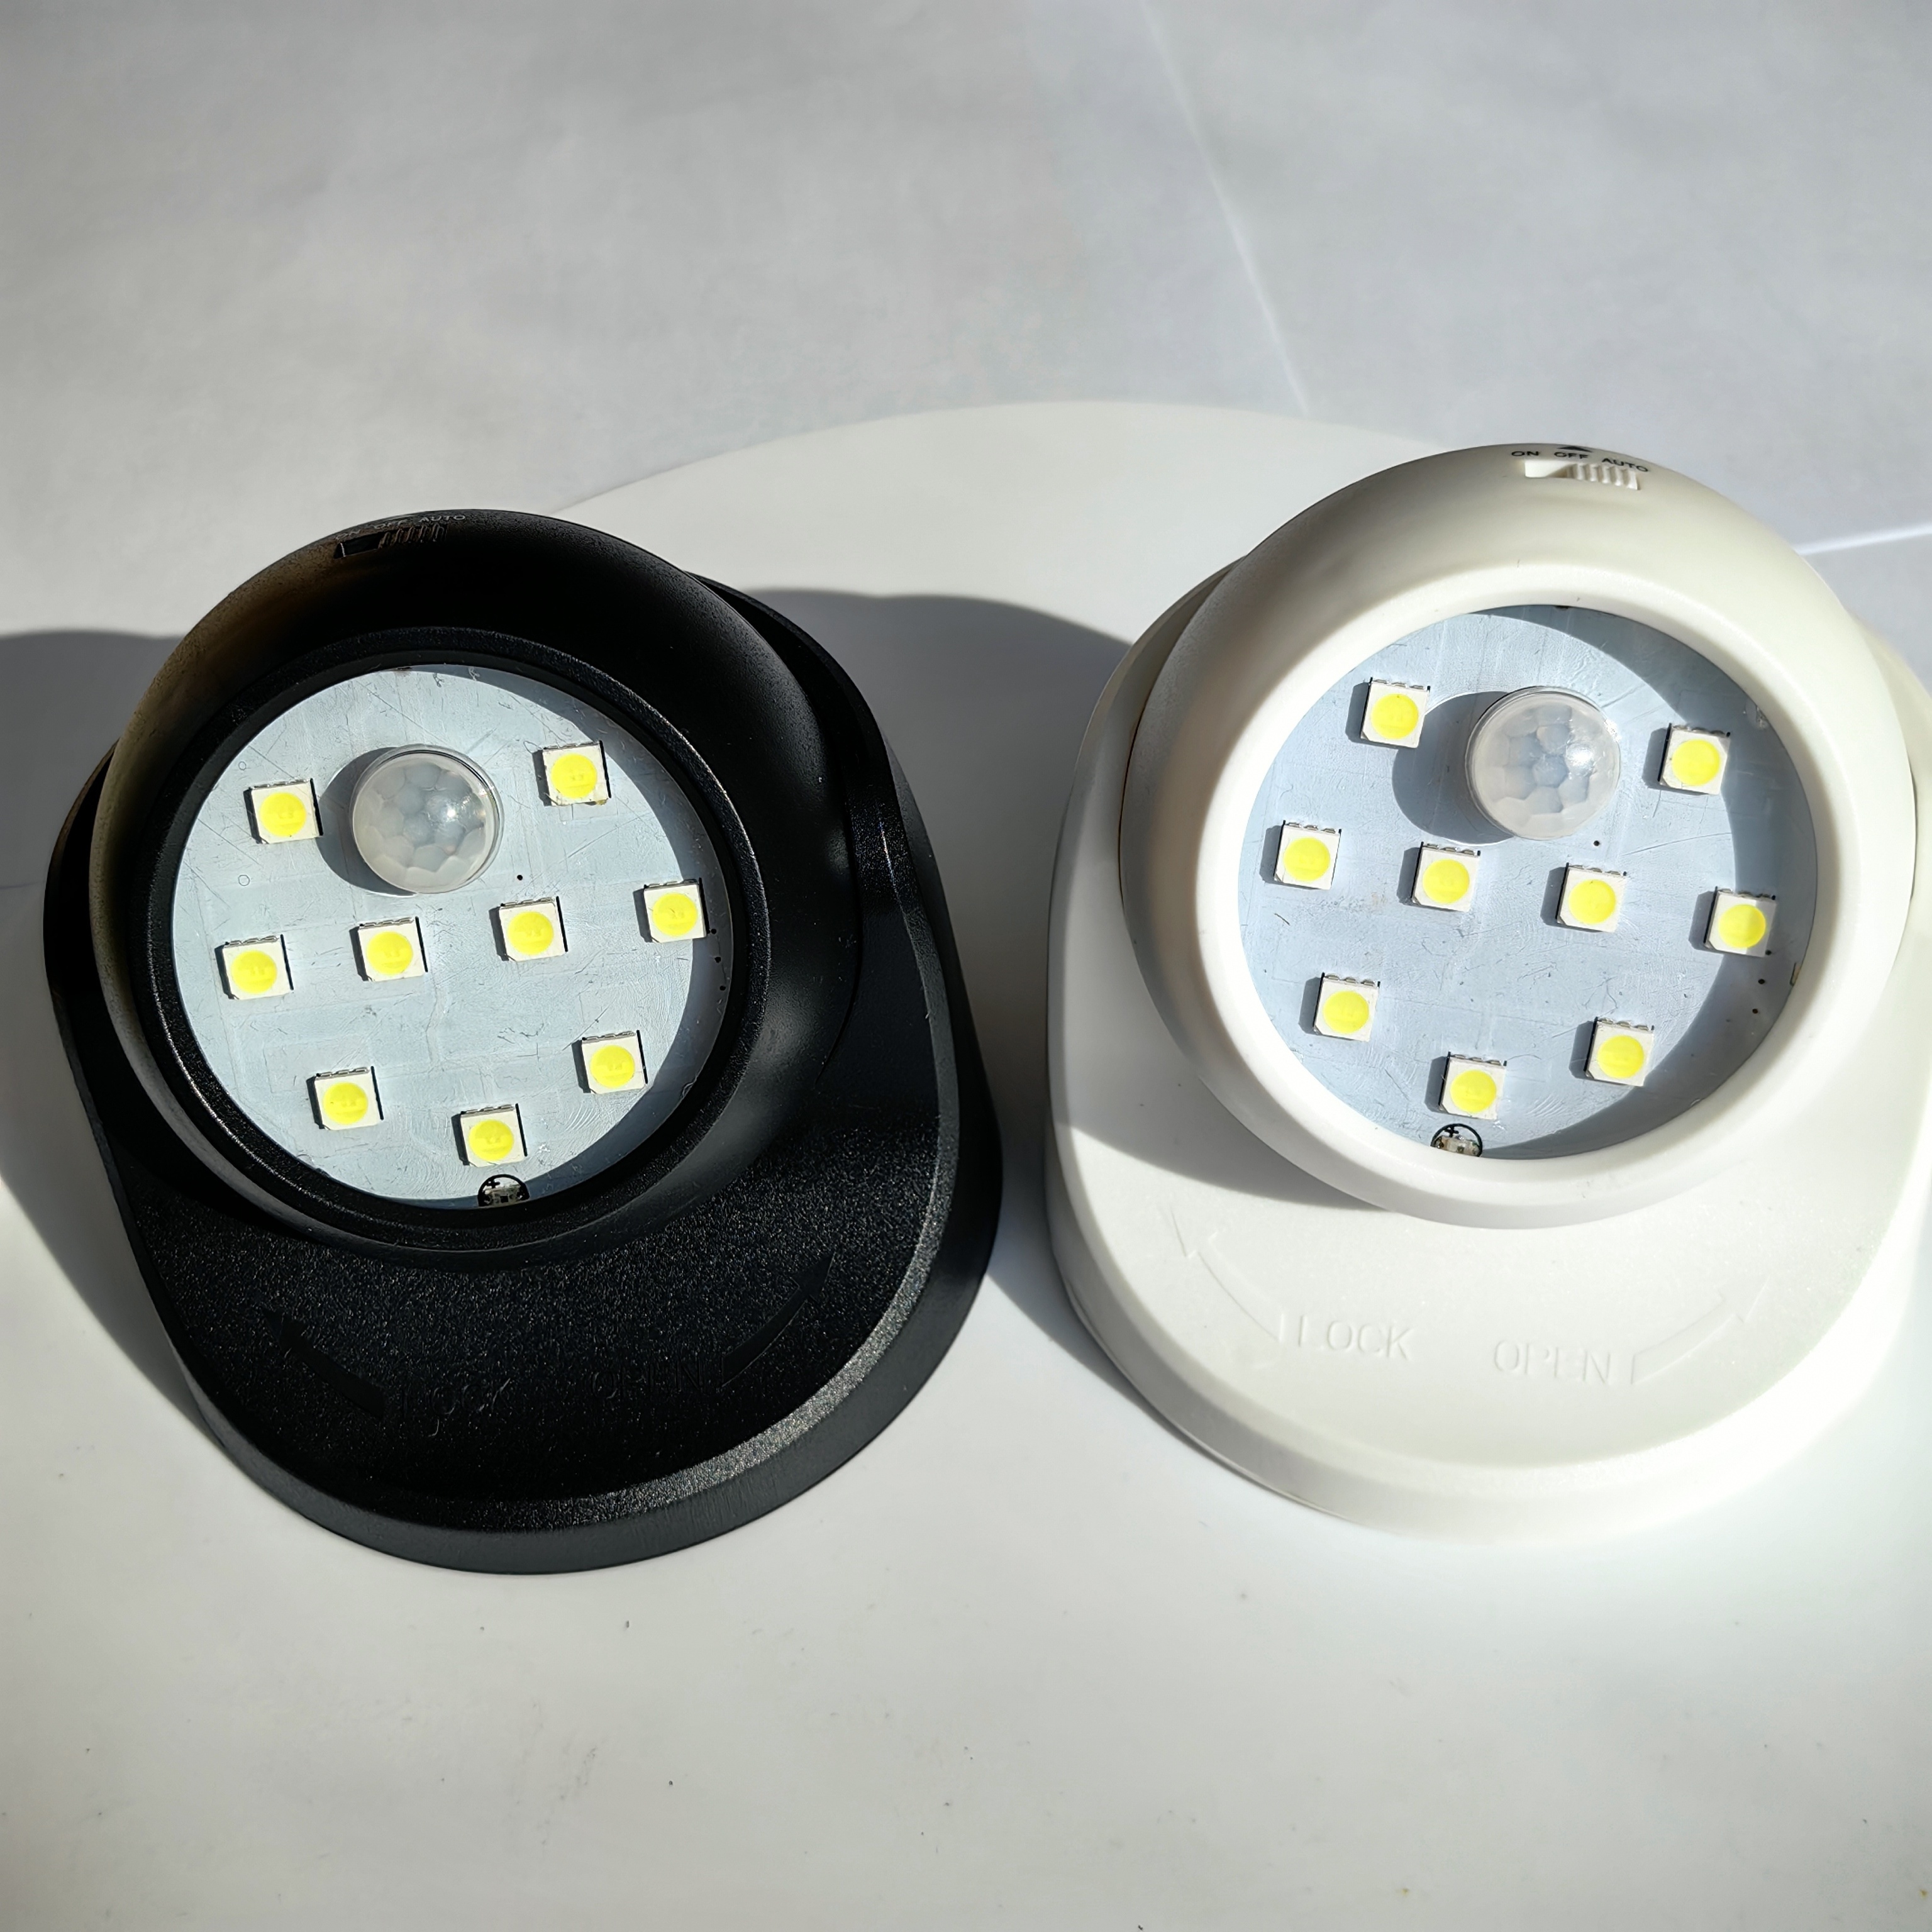 Luz nocturna LED con detector de movimiento y sensor crepuscular, 15 ledes,  funciona con pilas, luz de emergencia, lámpara de noche, luz de seguridad